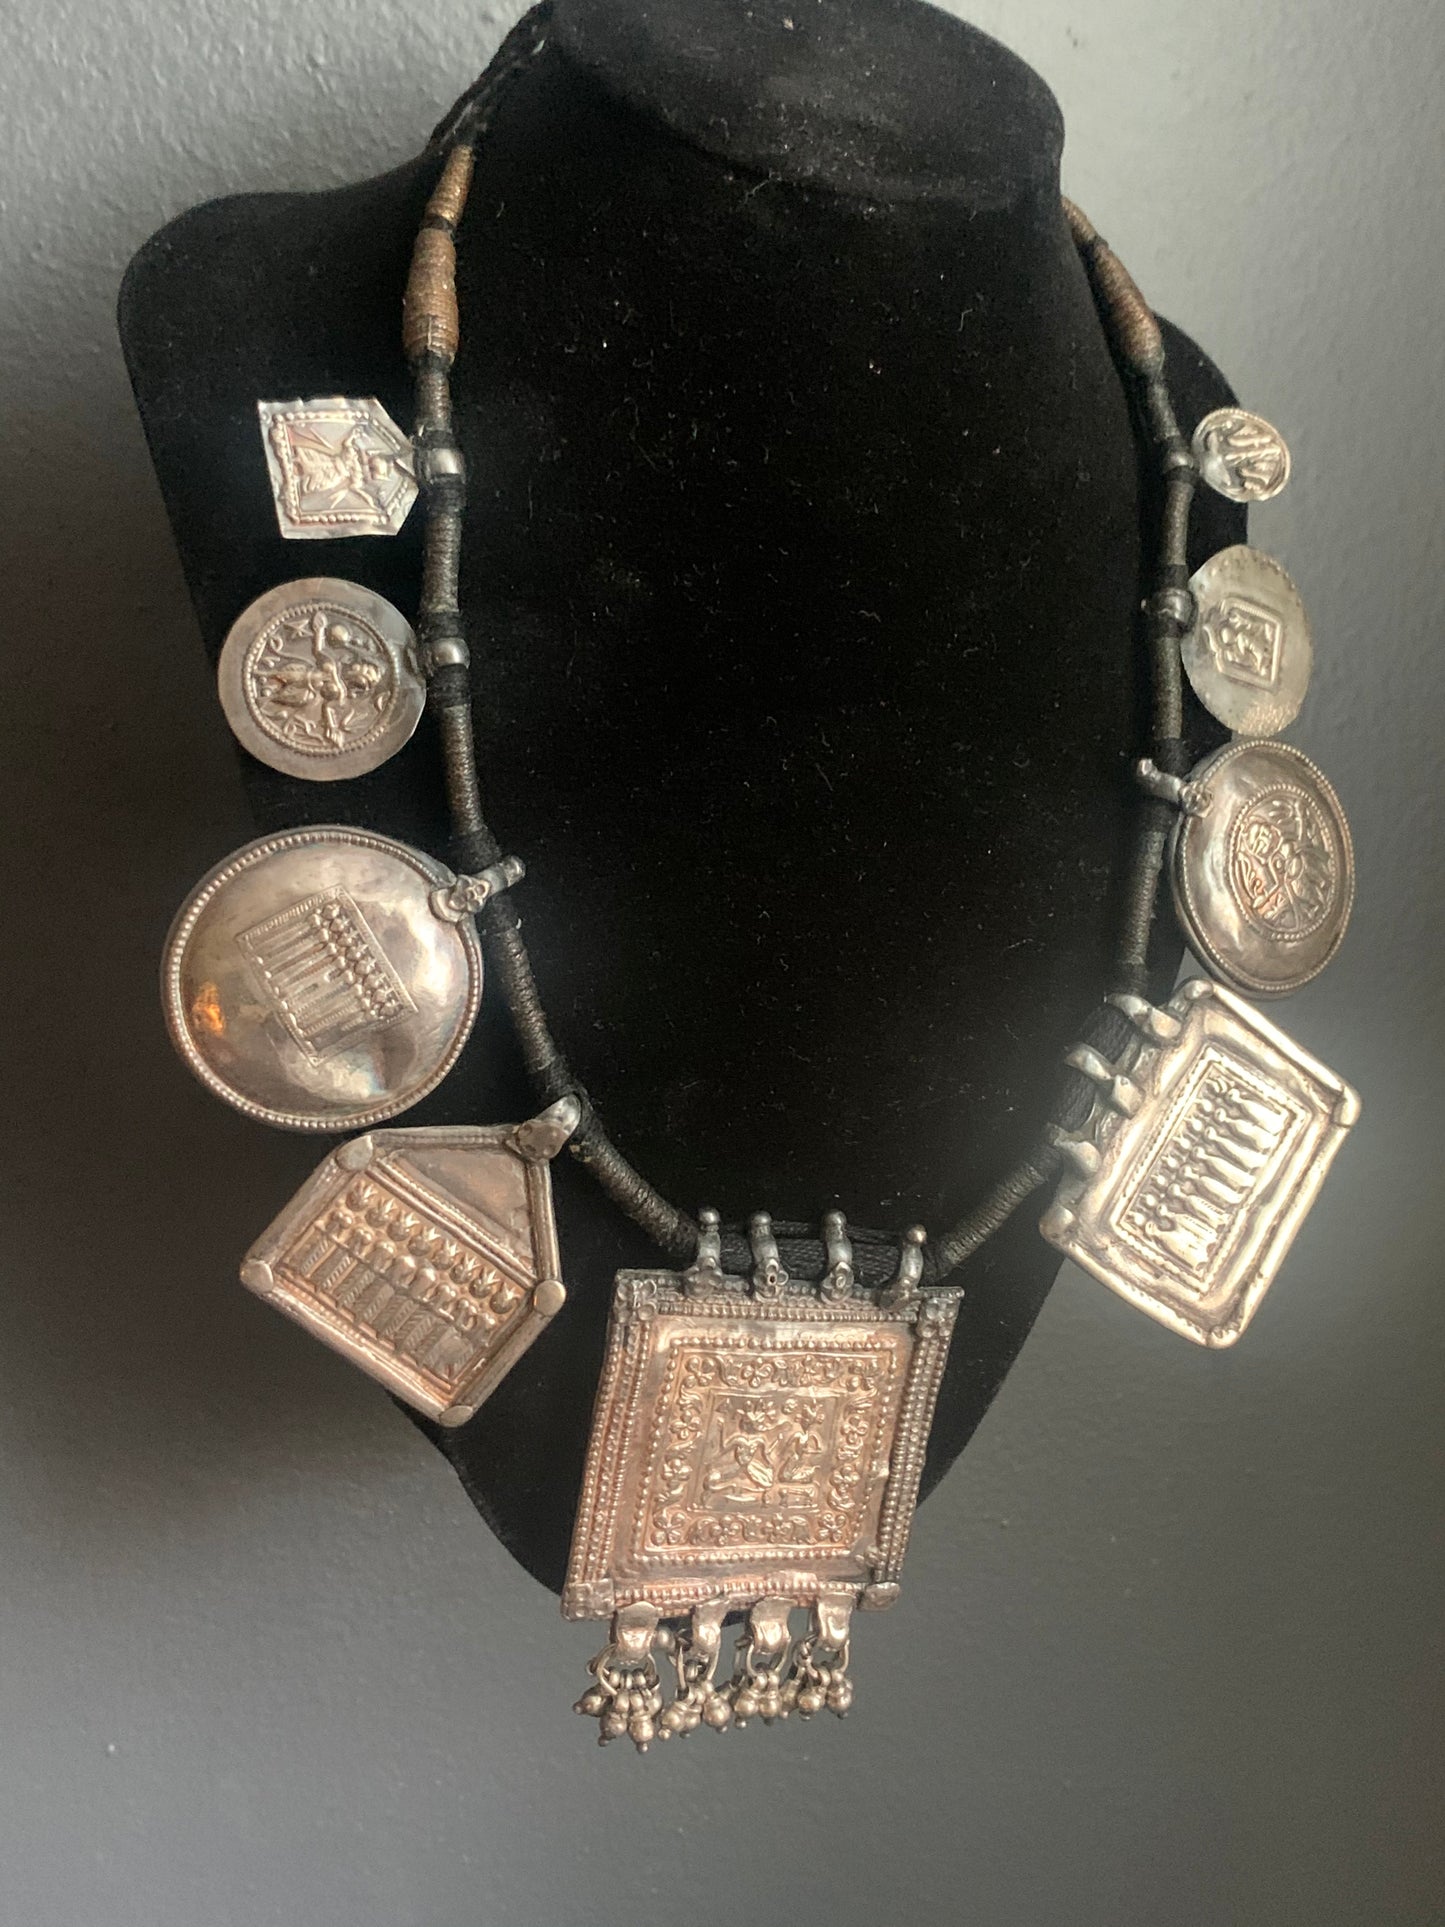 A silver necklaces